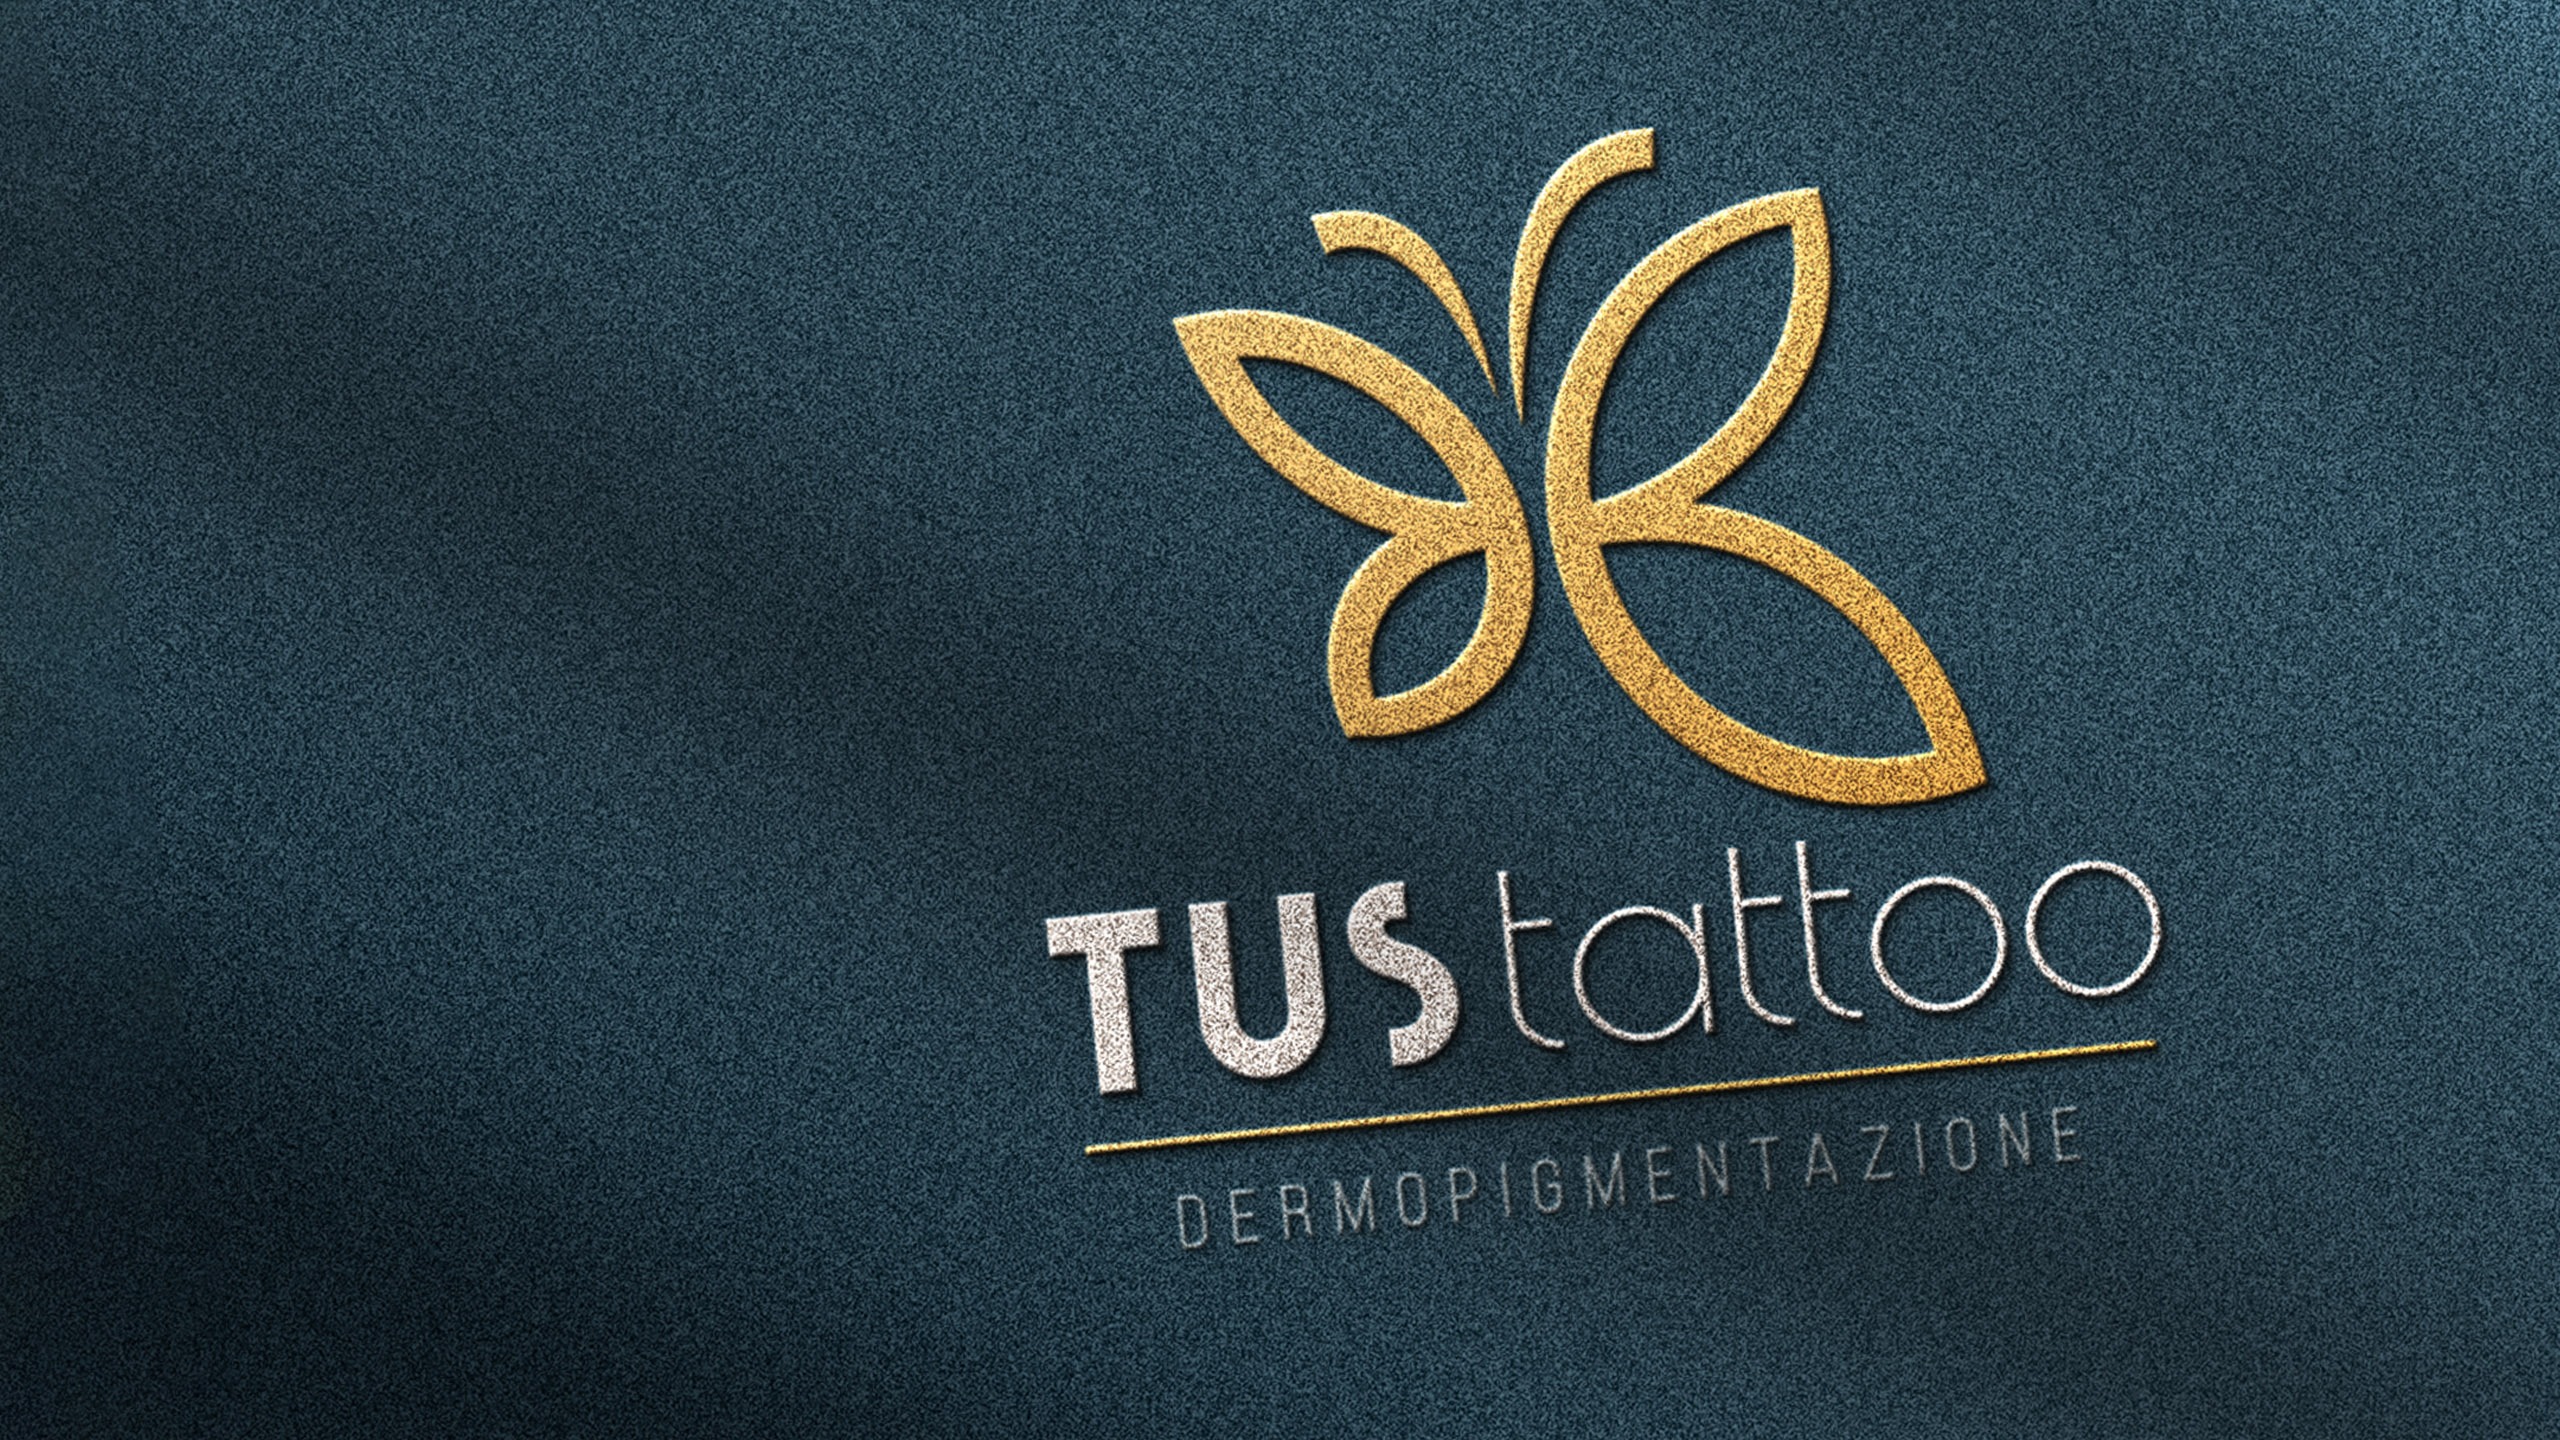 01_tus tatoo logo